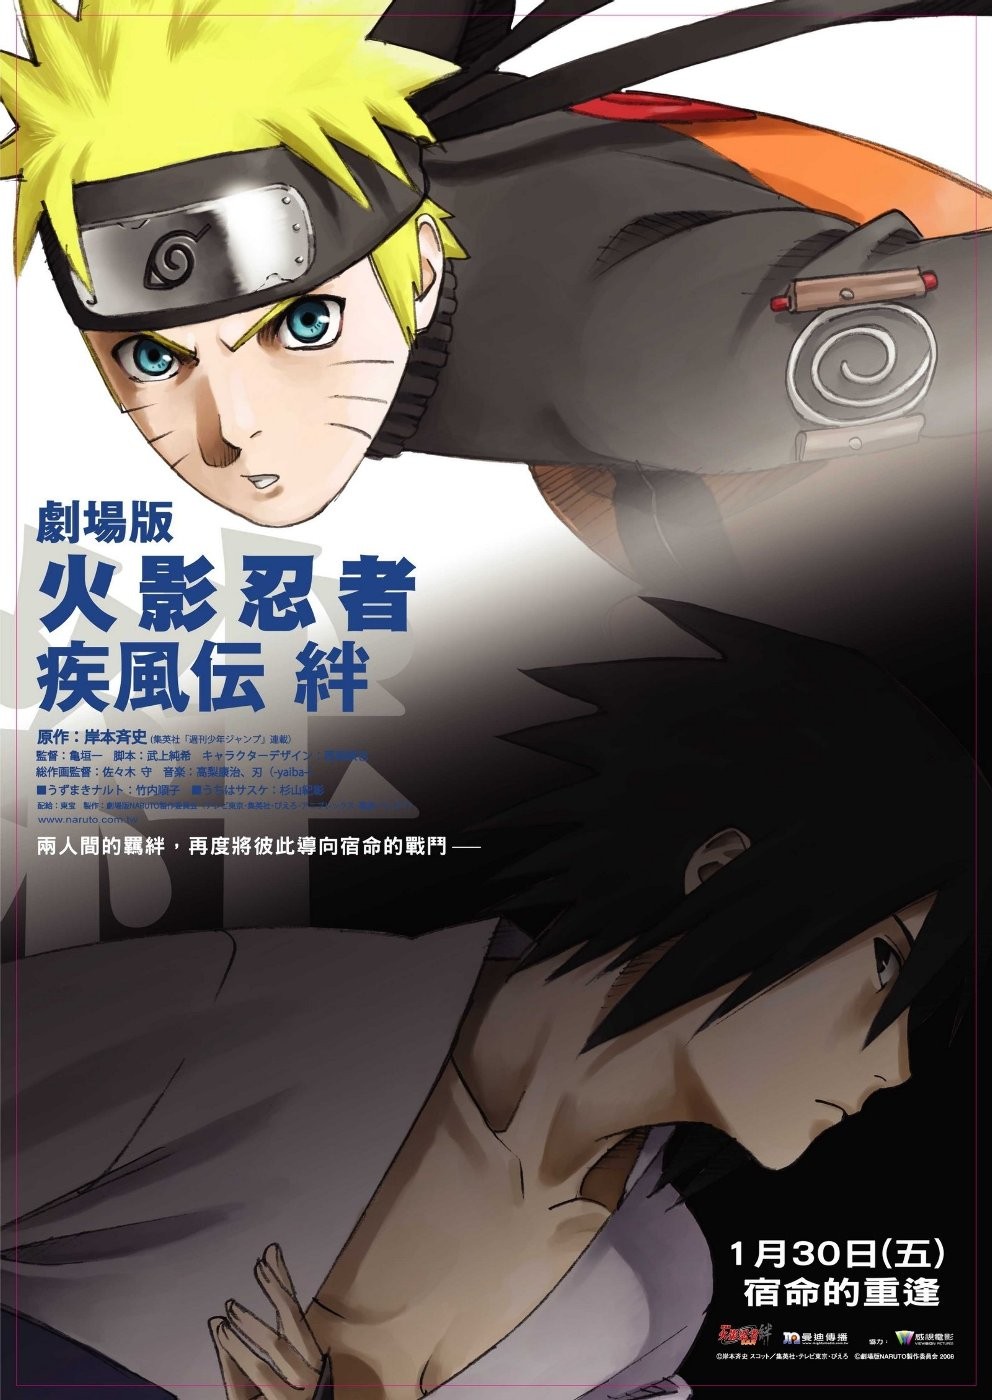 Наруто 5 / Naruto Shippuden: The Movie - Bonds (2008) отзывы. Рецензии. Новости кино. Актеры фильма Наруто 5. Отзывы о фильме Наруто 5